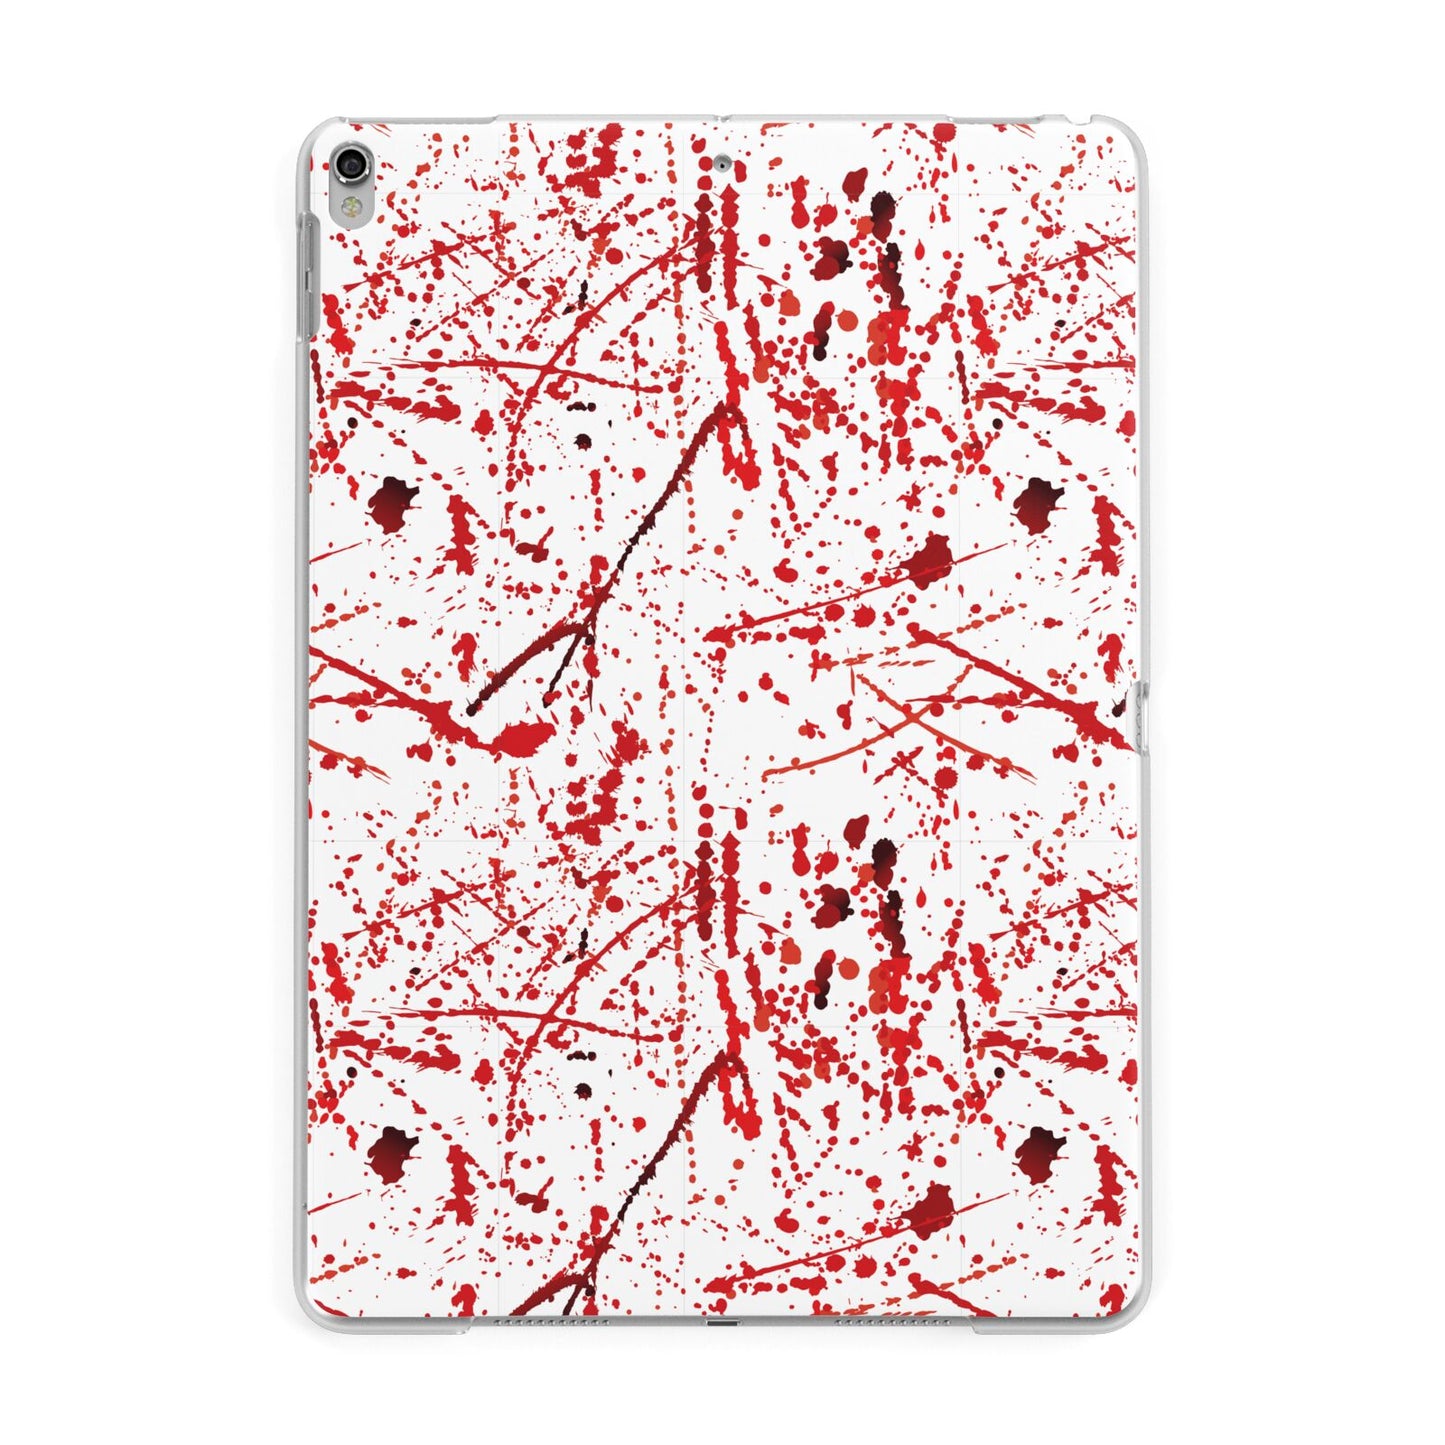 Blood Splatter Apple iPad Silver Case